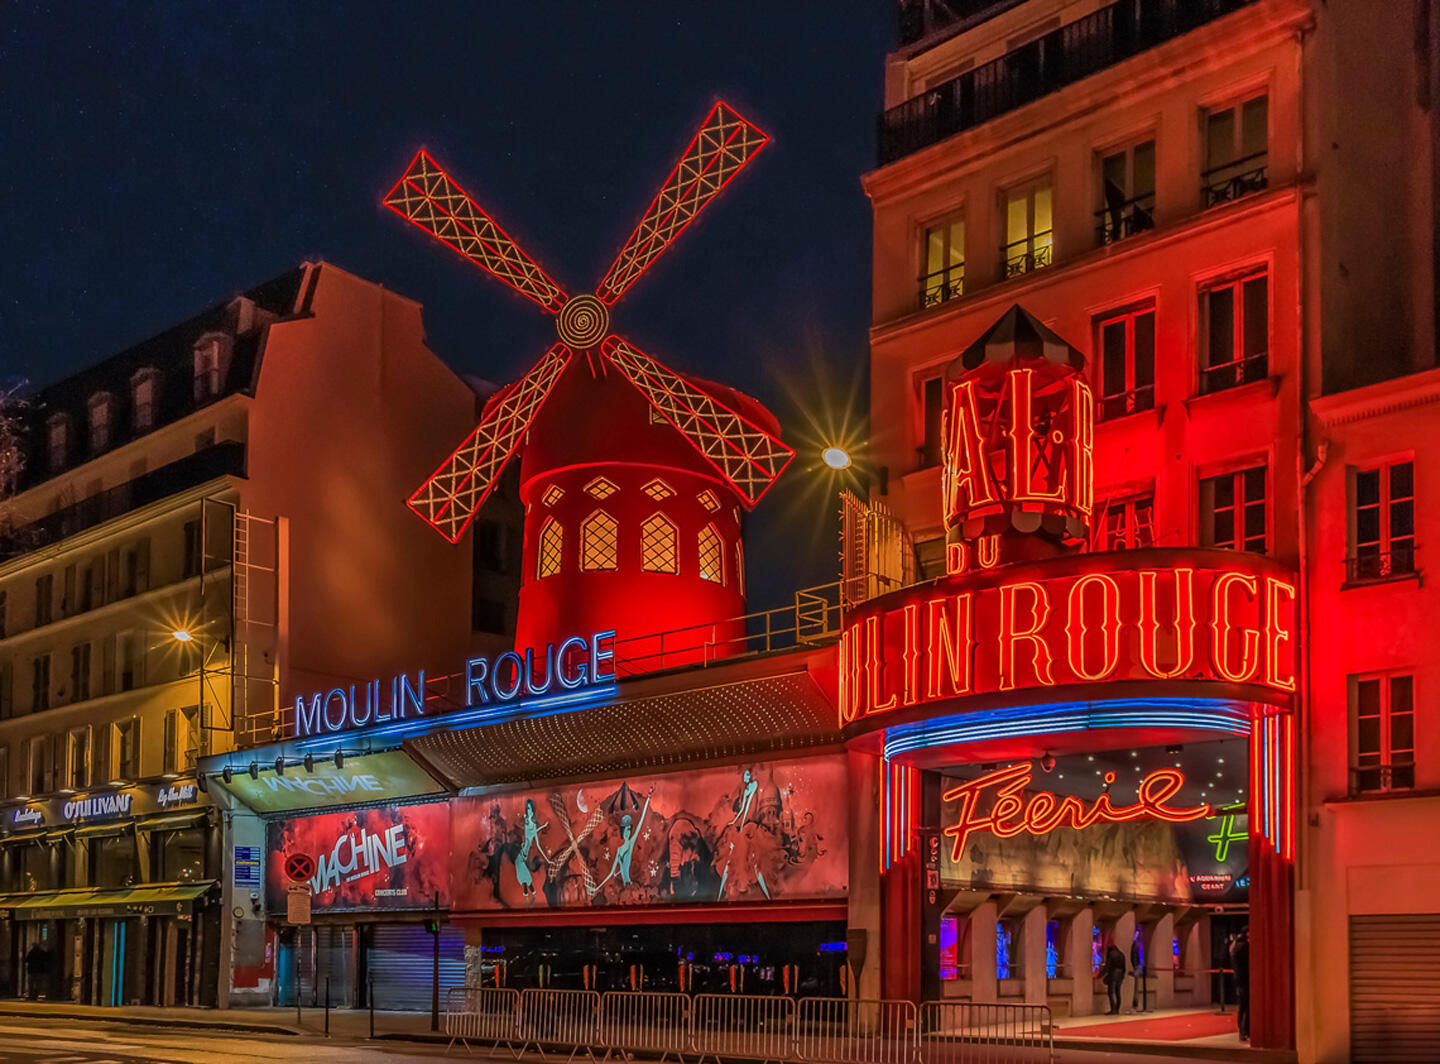 Fachada iluminada del Moulin Rouge en París de noche con su icónico molino rojo.